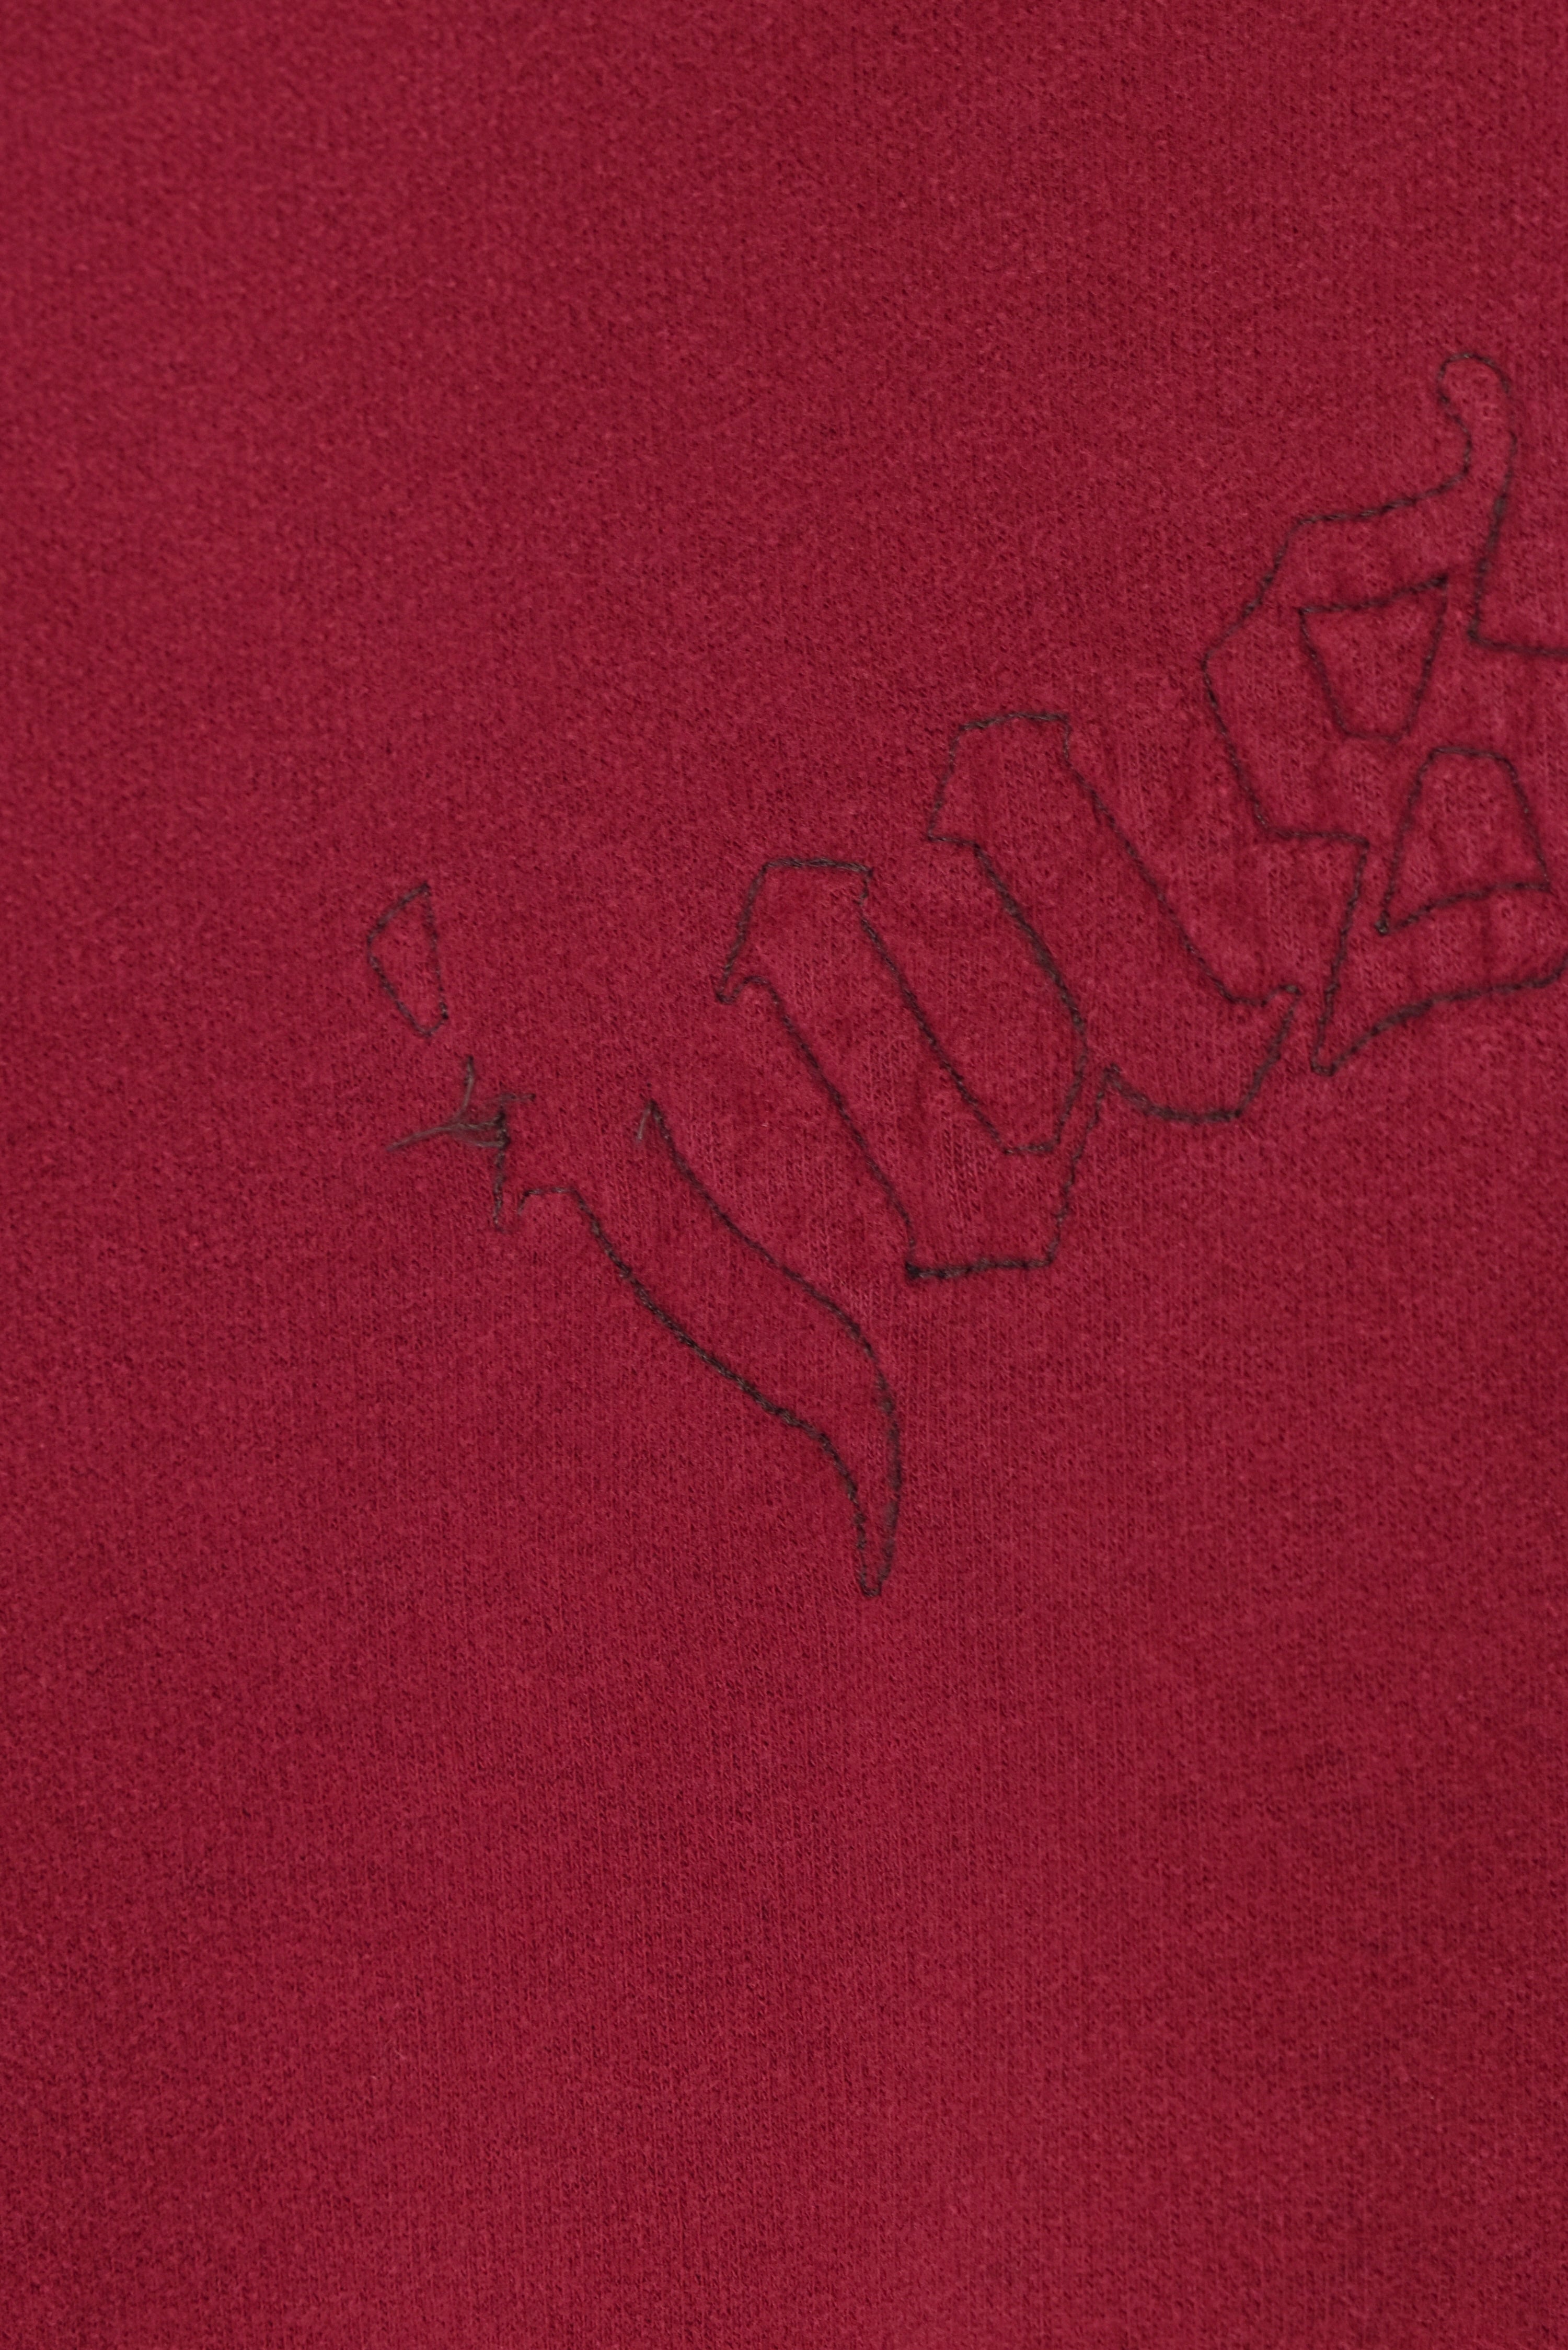 Vintage Nike hoodie (XL), red embroidered sweatshirt